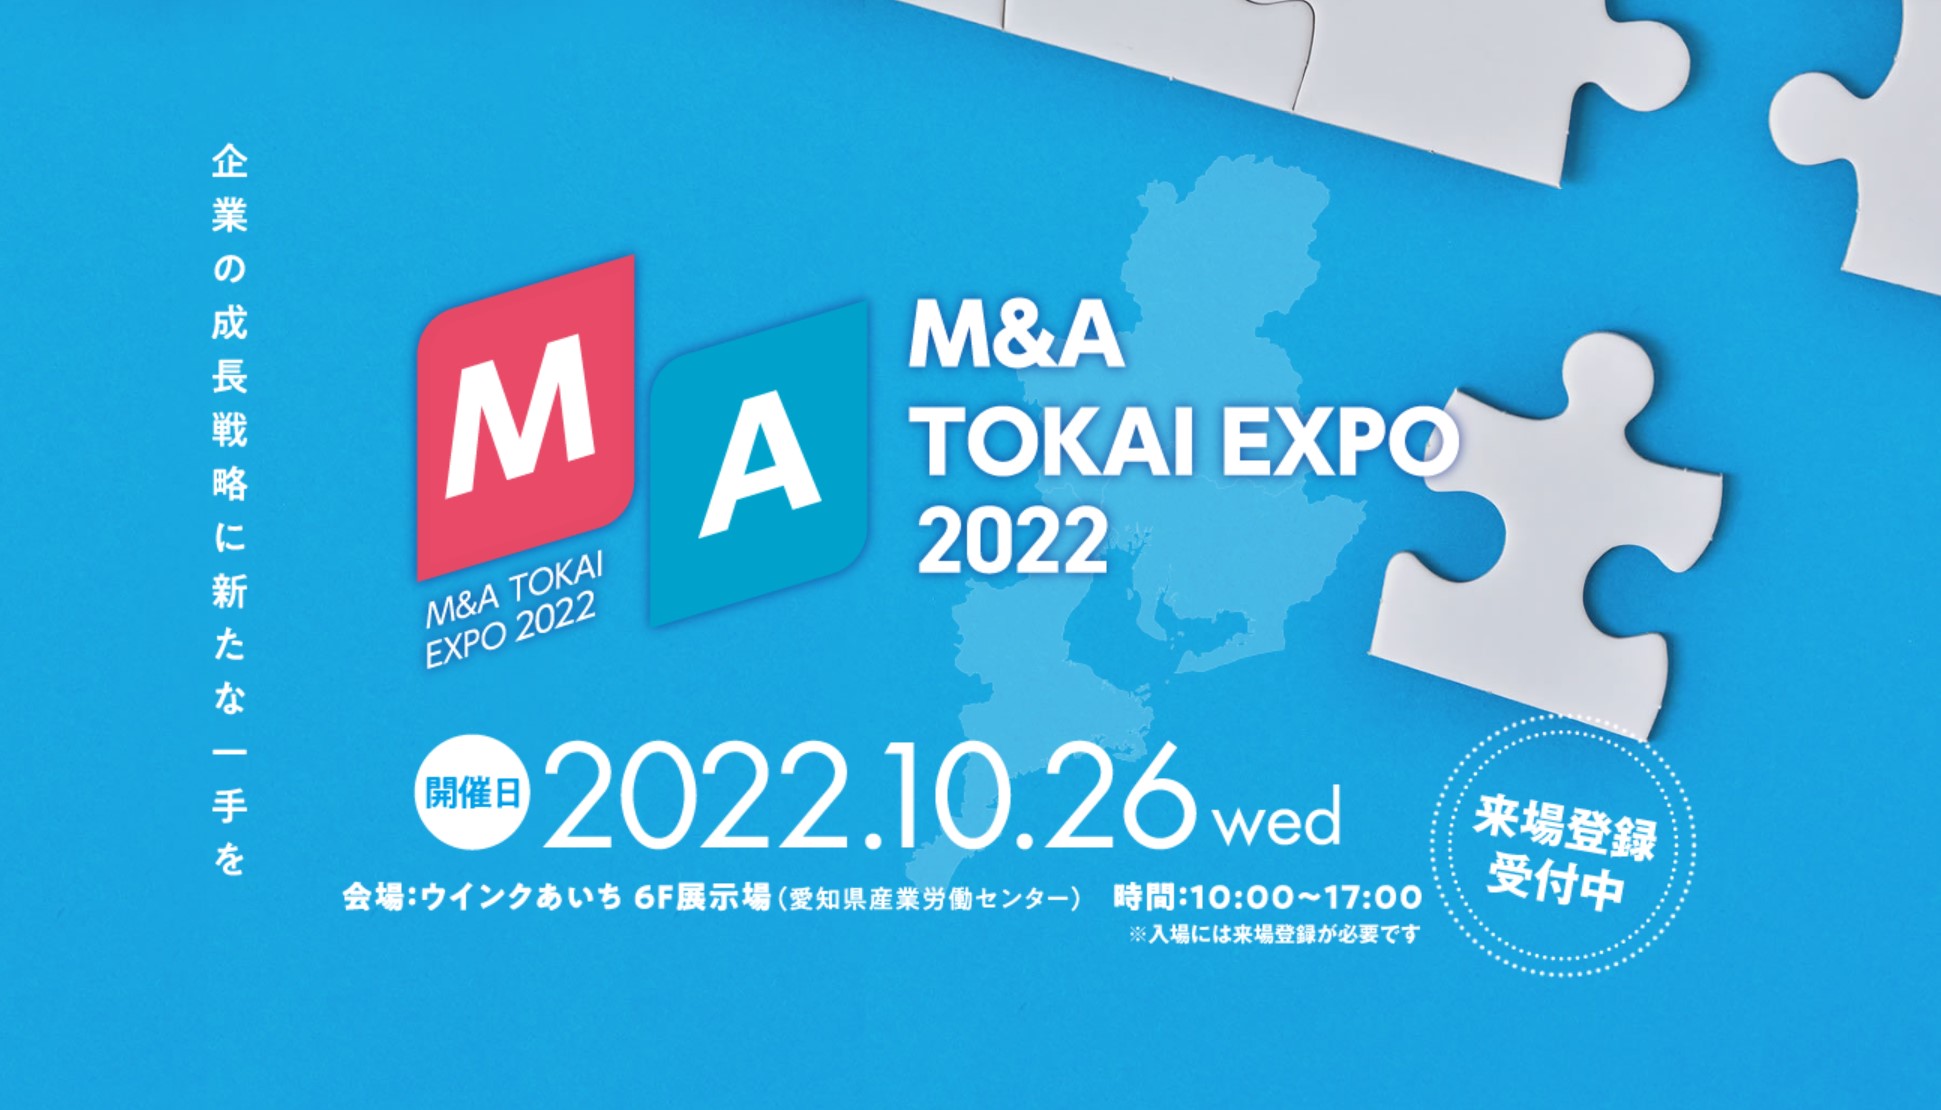 M&A TOKAI EXPO